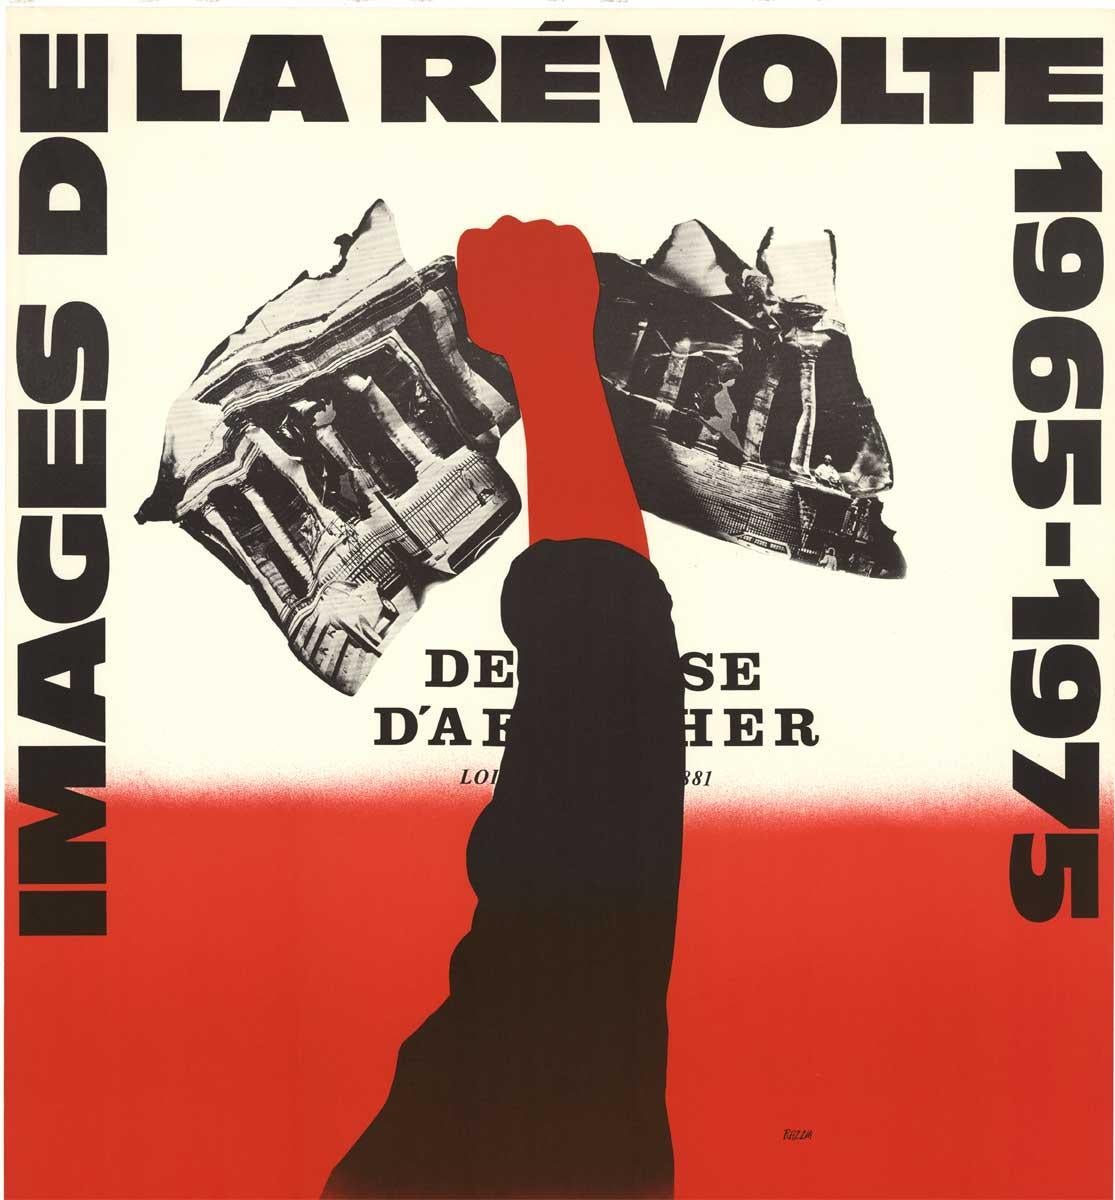 Images de la Revolte 1965-1975 hand signed original French vintage poster - Red Print by Razzia (Gérard Courbouleix–Dénériaz)